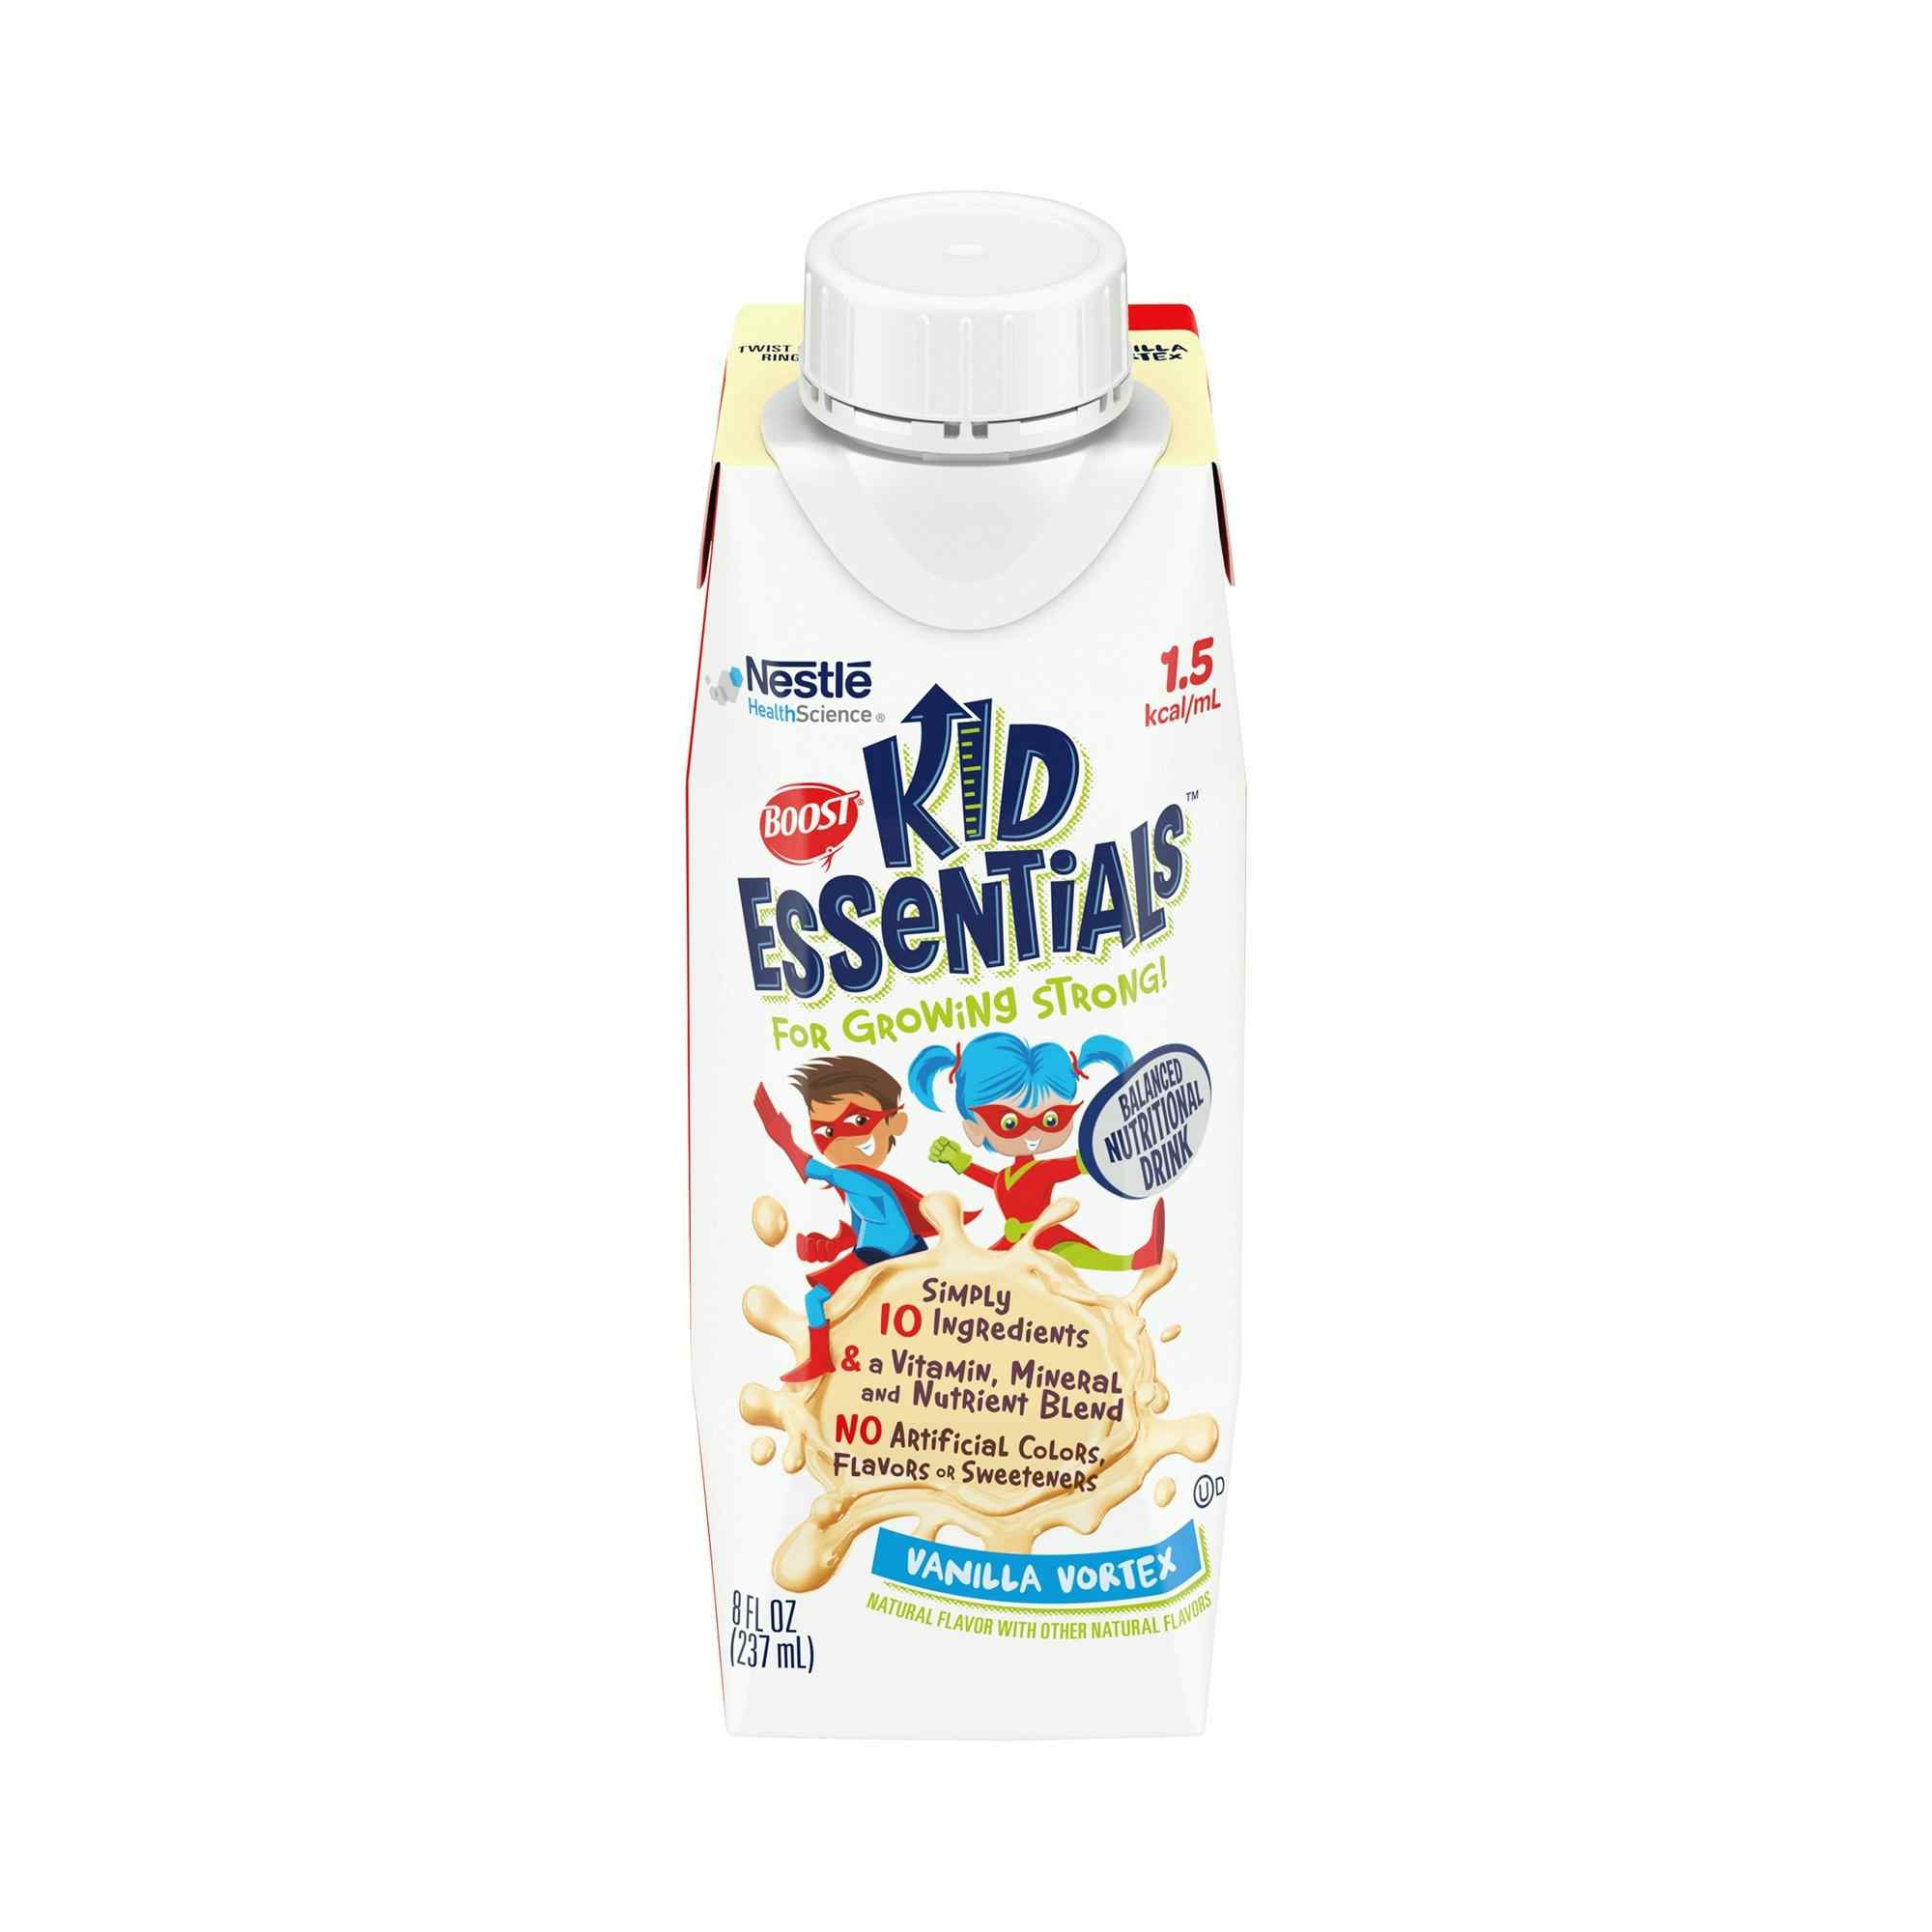 Boost Kid Essentials 1.5 Oral Supplement/Tube Feeding, Vanilla, 8 oz.